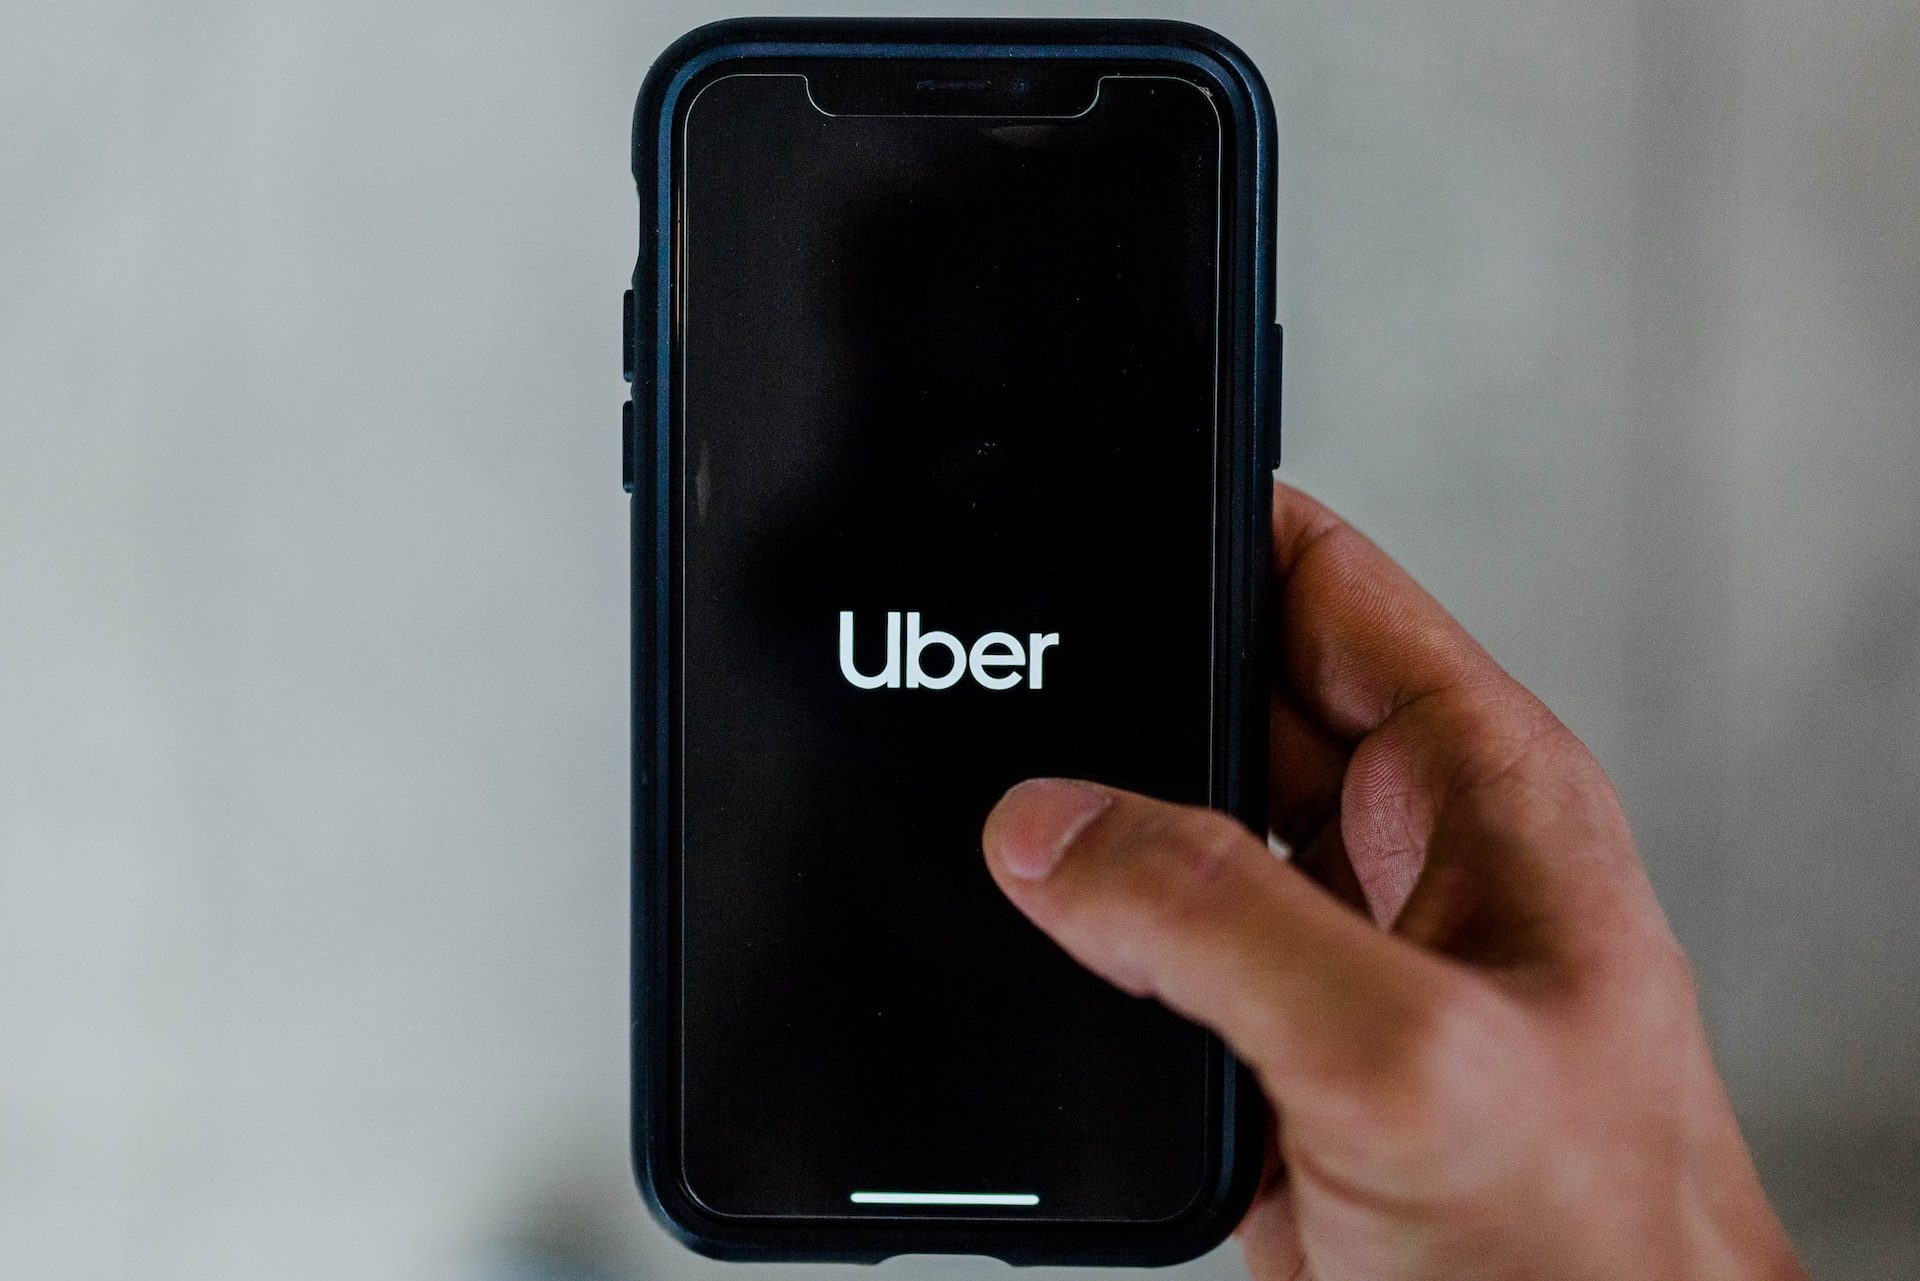 Uber logo on smartphone